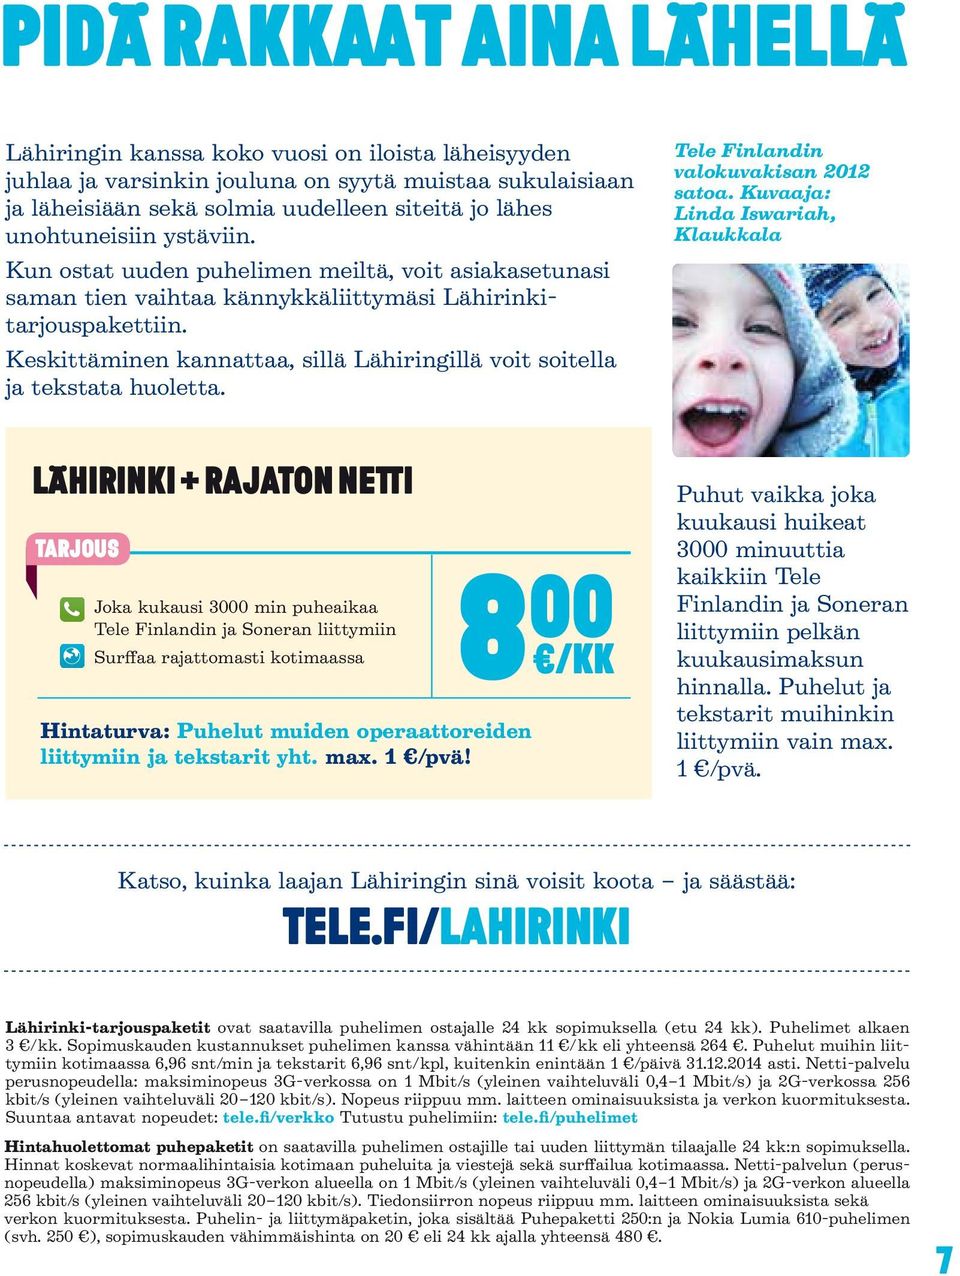 Keskittäminen kannattaa, sillä Lähiringillä voit soitella ja tekstata huoletta. Tele Finlandin valokuvakisan 2012 satoa.